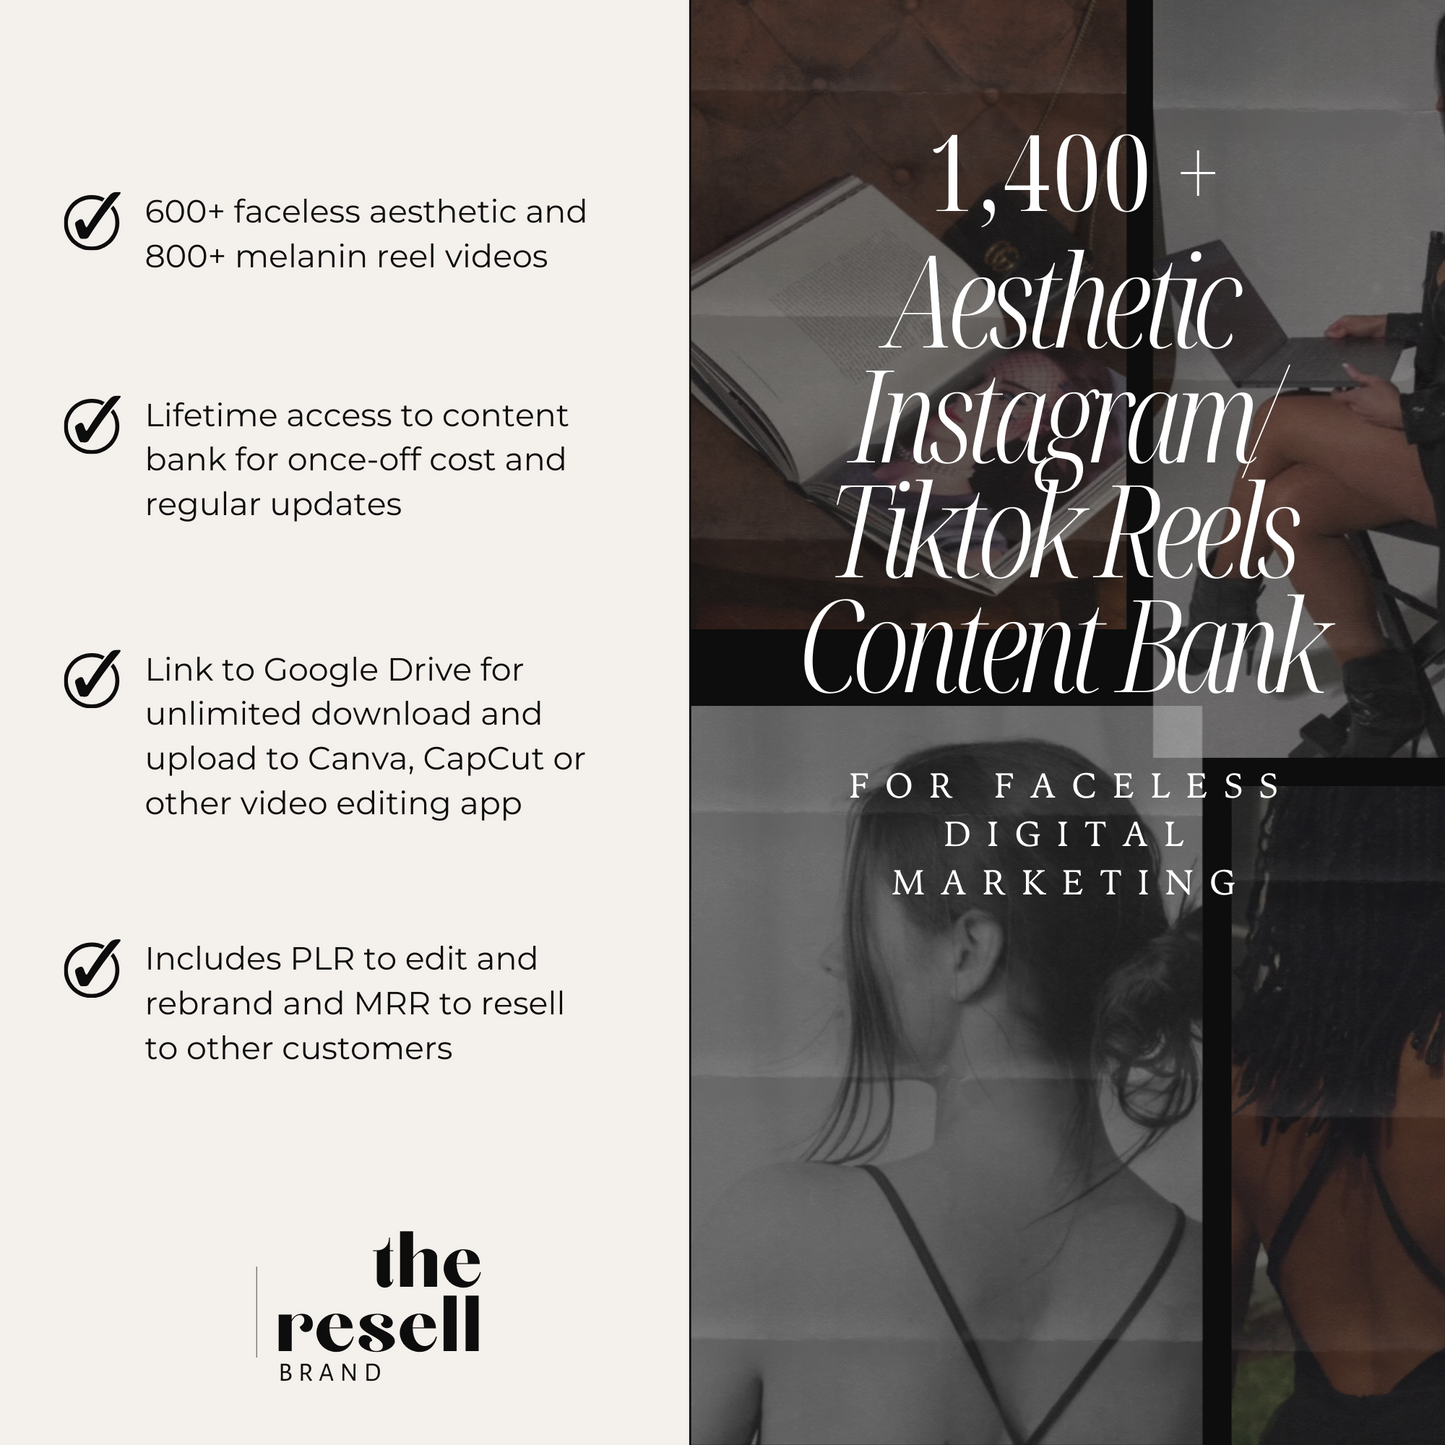 1400+ Instagram/Tiktok Reel Videos Content Bank | Aesthetic, Faceless and Melanin Videos | MRR & PLR